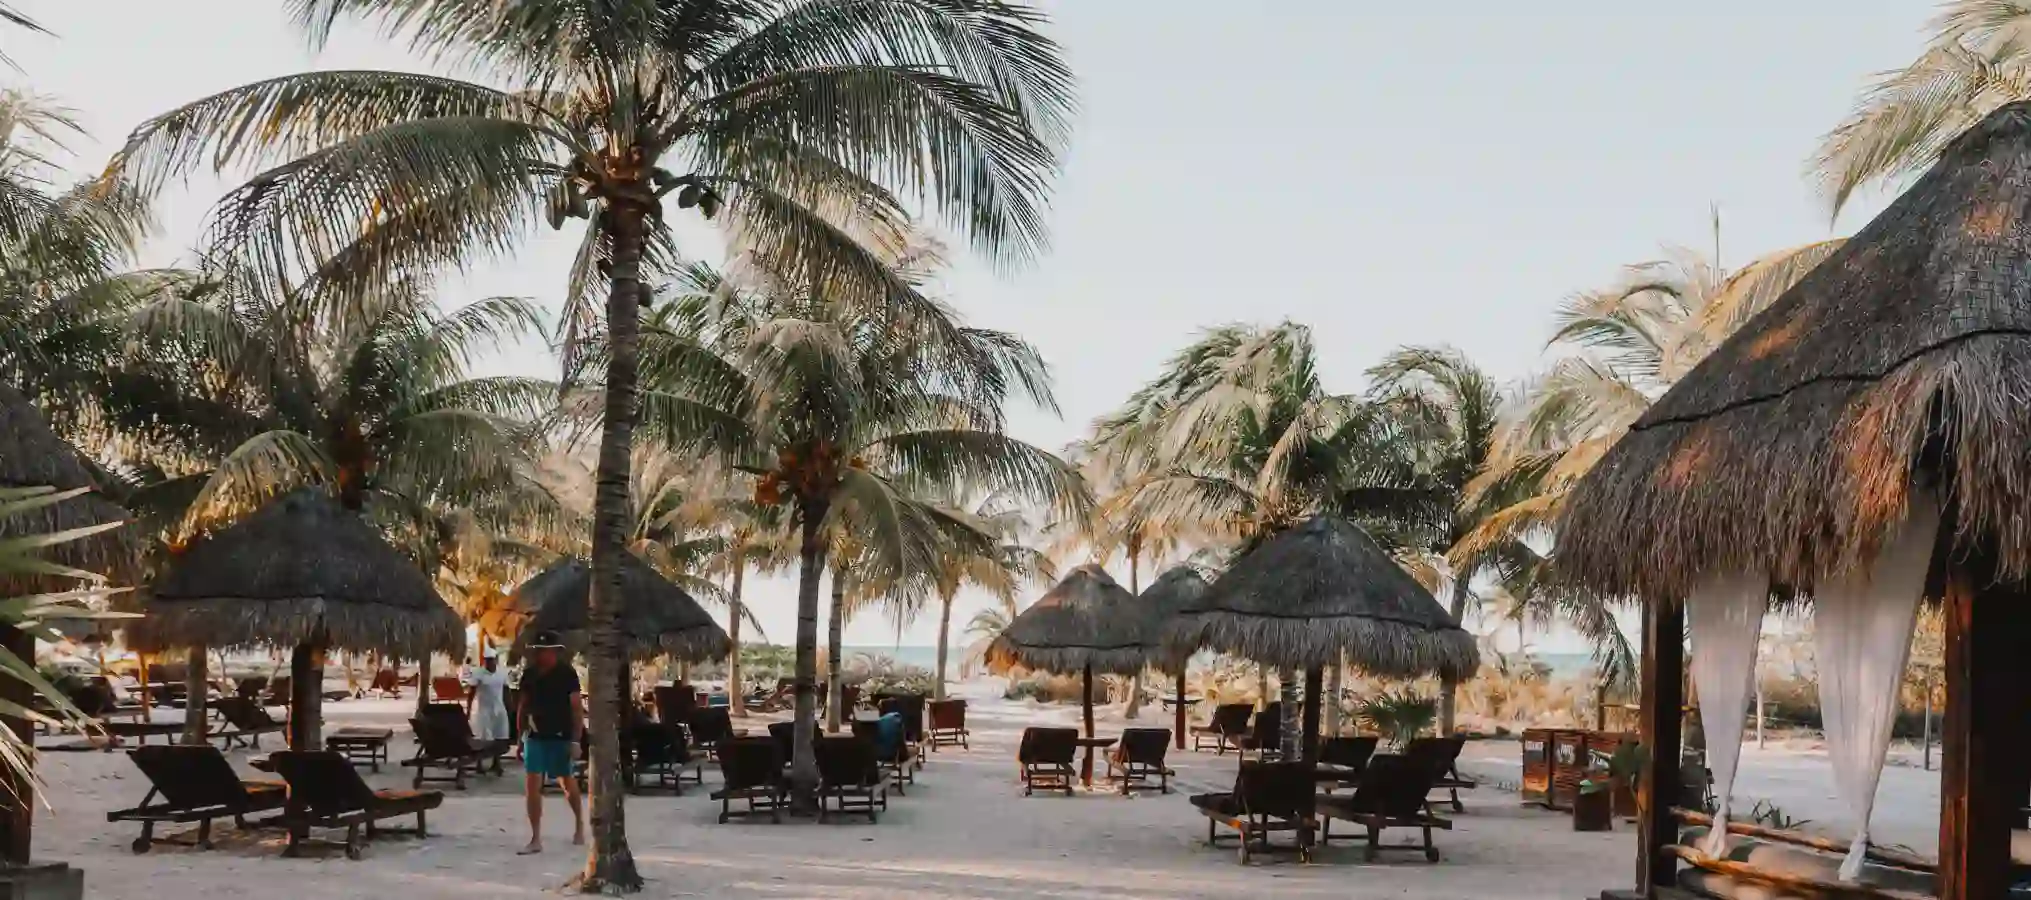 Playa con palmeras y sillas